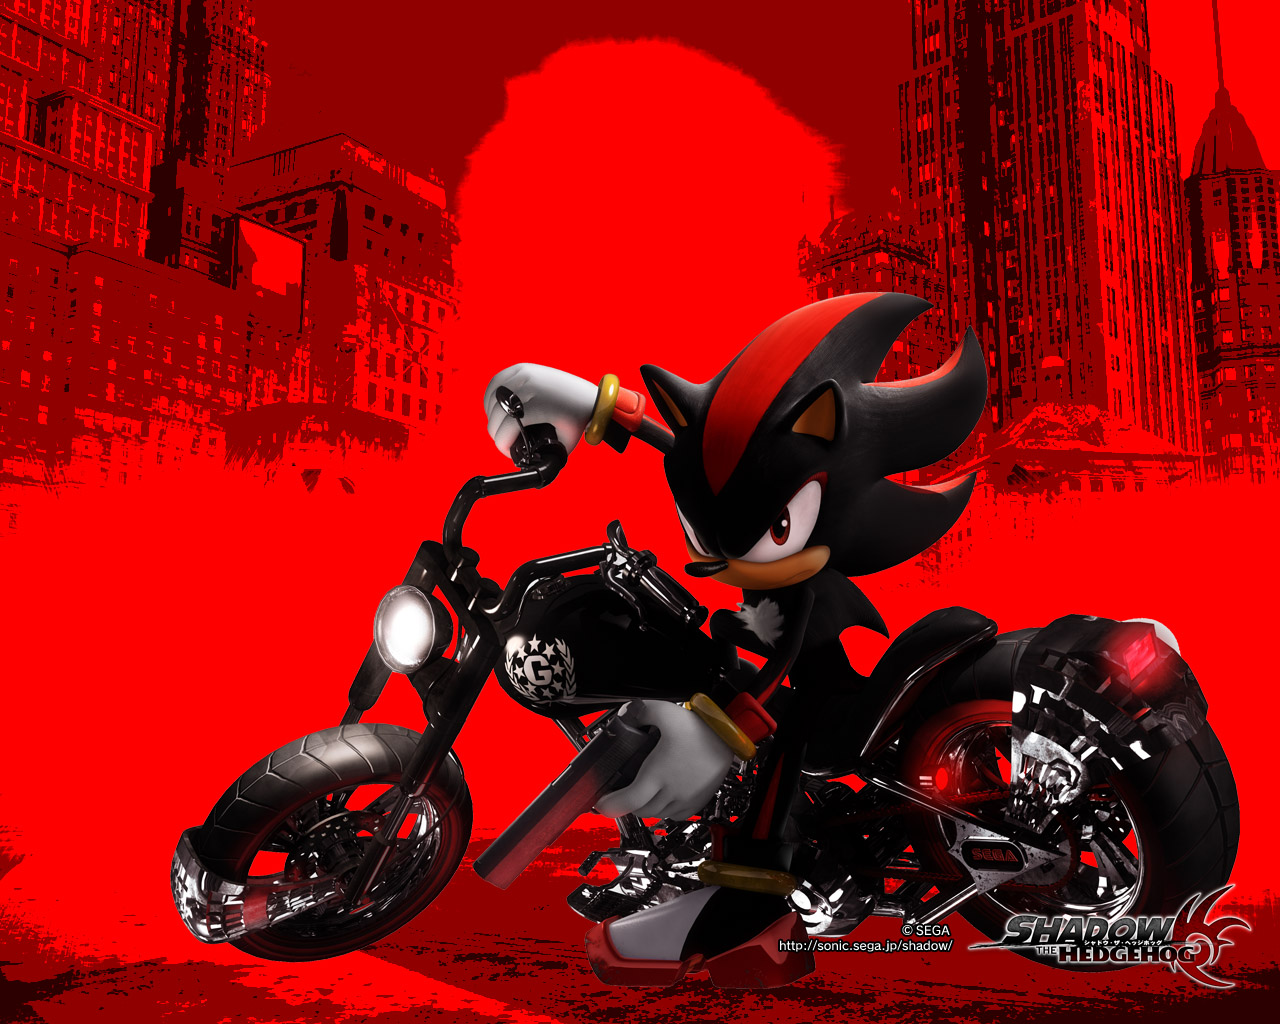 ombra lo sfondo del riccio,rosso,motociclo,personaggio fittizio,veicolo,corse di superbike